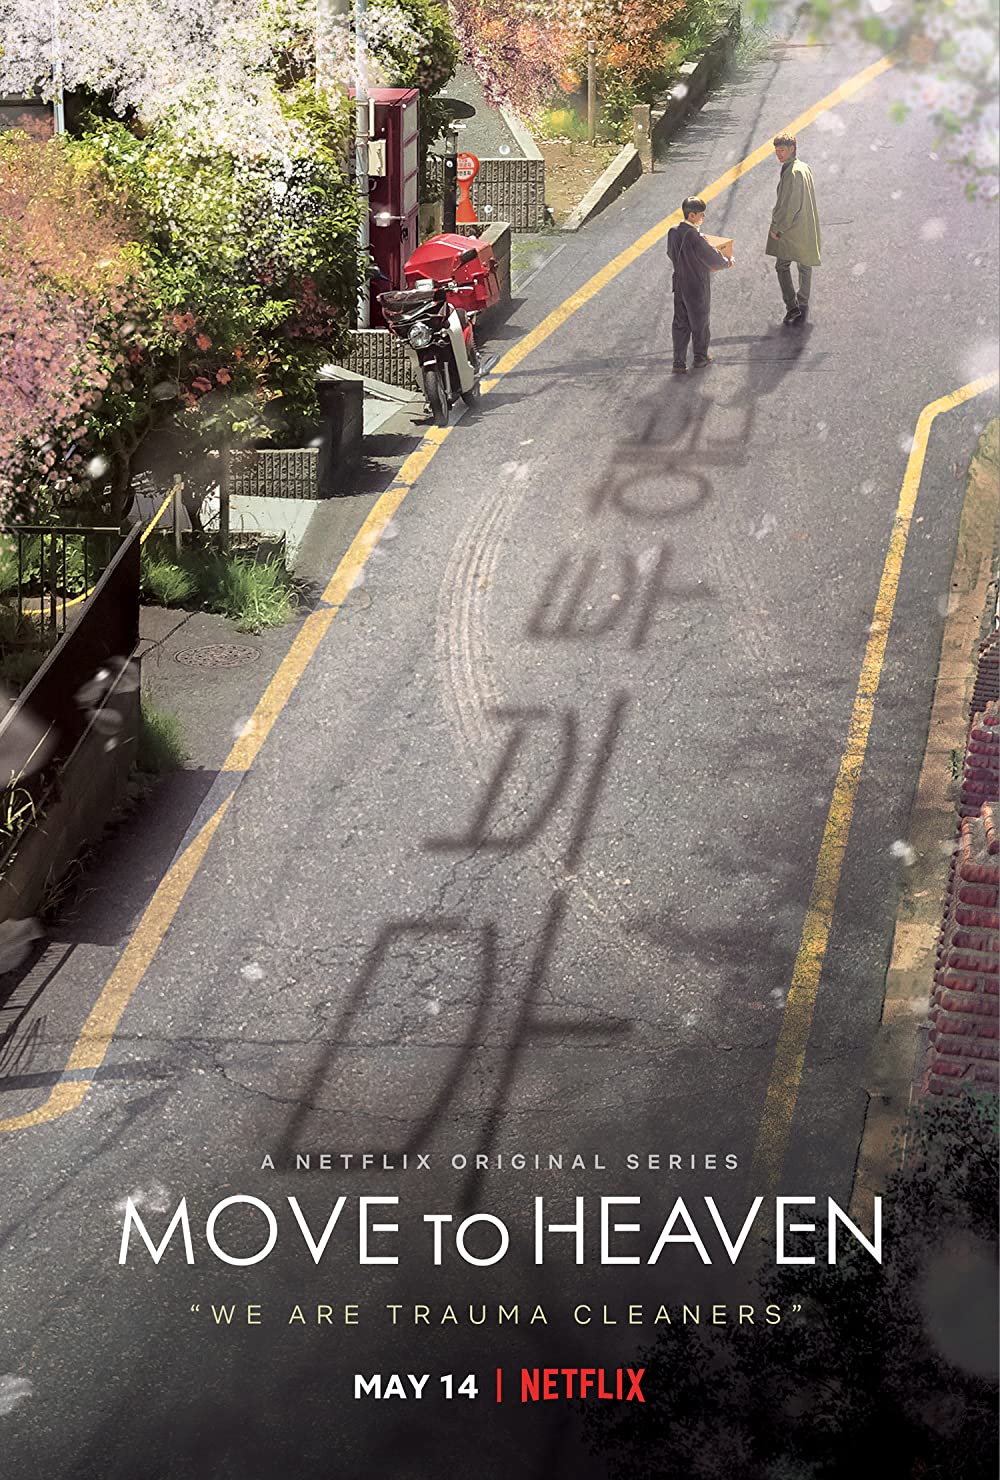 ดูหนังออนไลน์ฟรี ซีรี่ย์เกาหลี Move to Heaven พากย์ไทย (จบ)